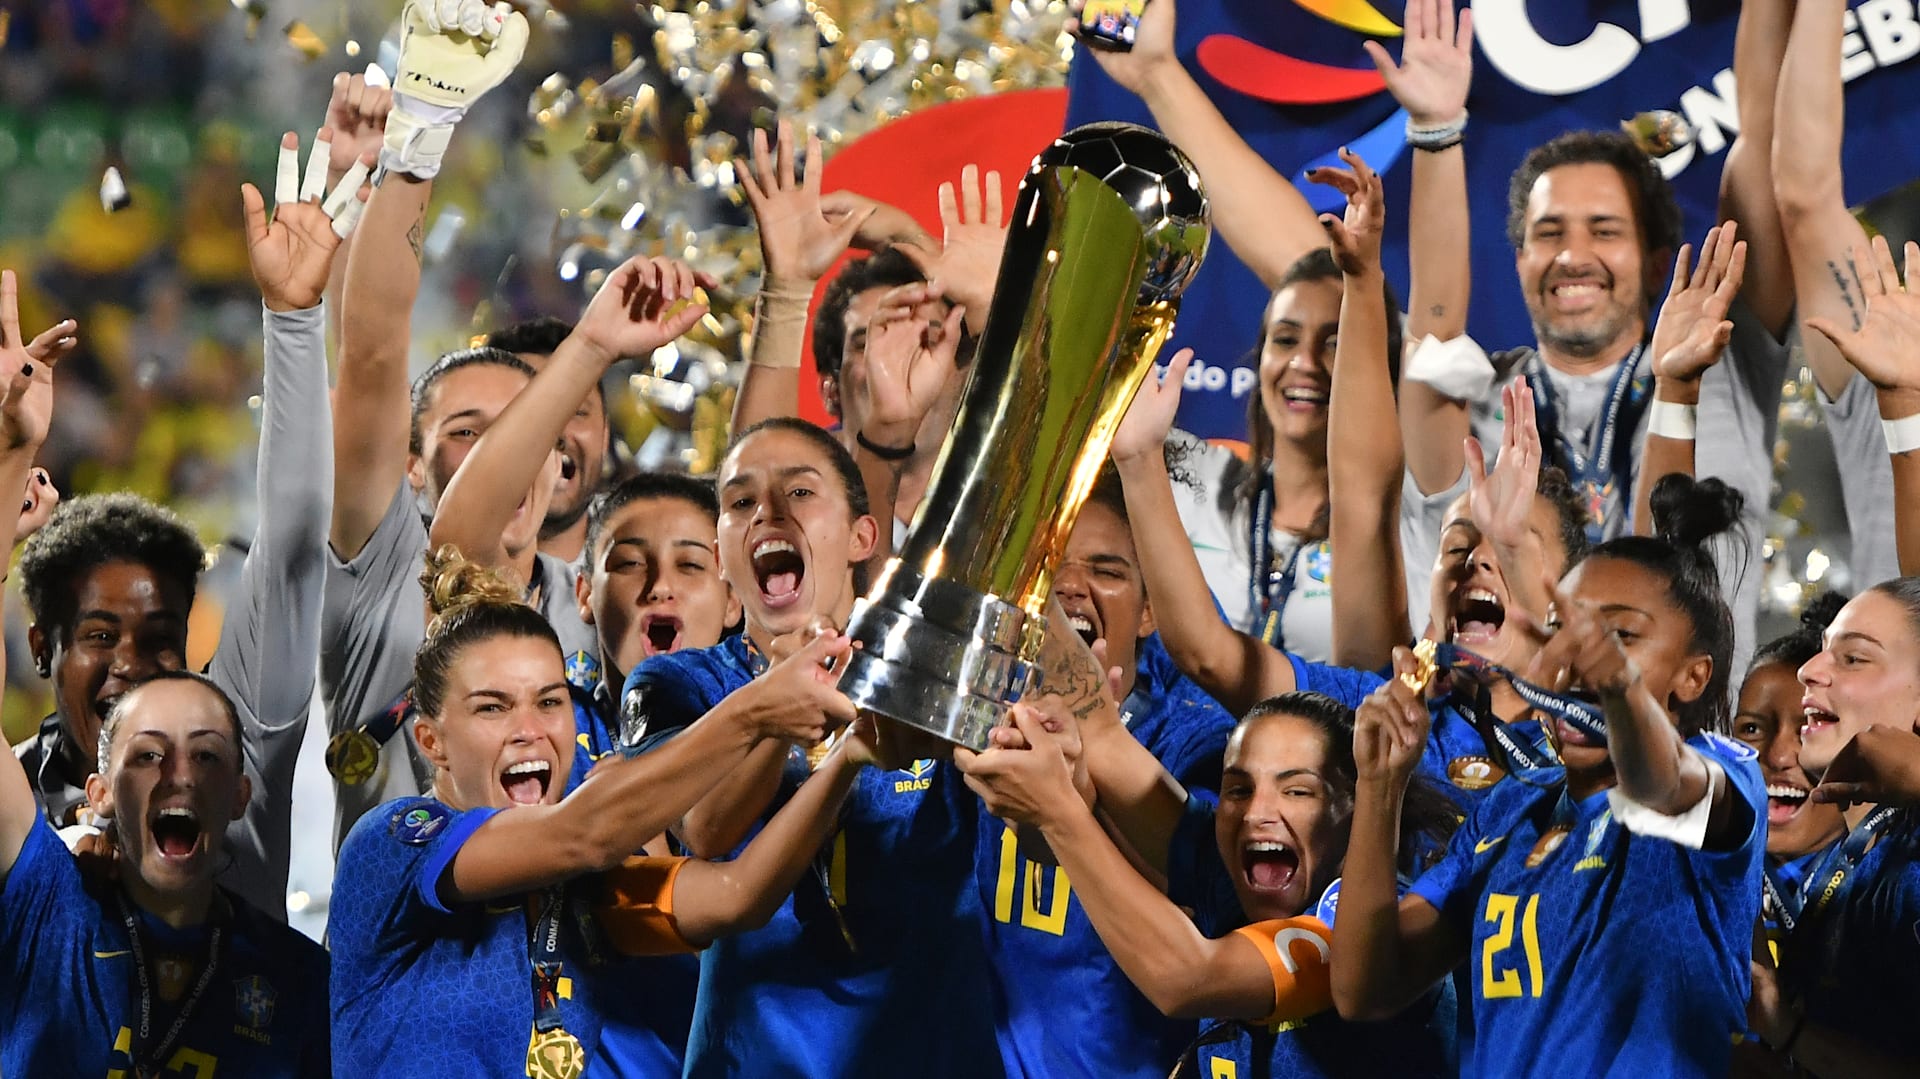 Copa América - BRASIL NA SEMI! 🤩🇧🇷, Grupo 🅰️ Com 3